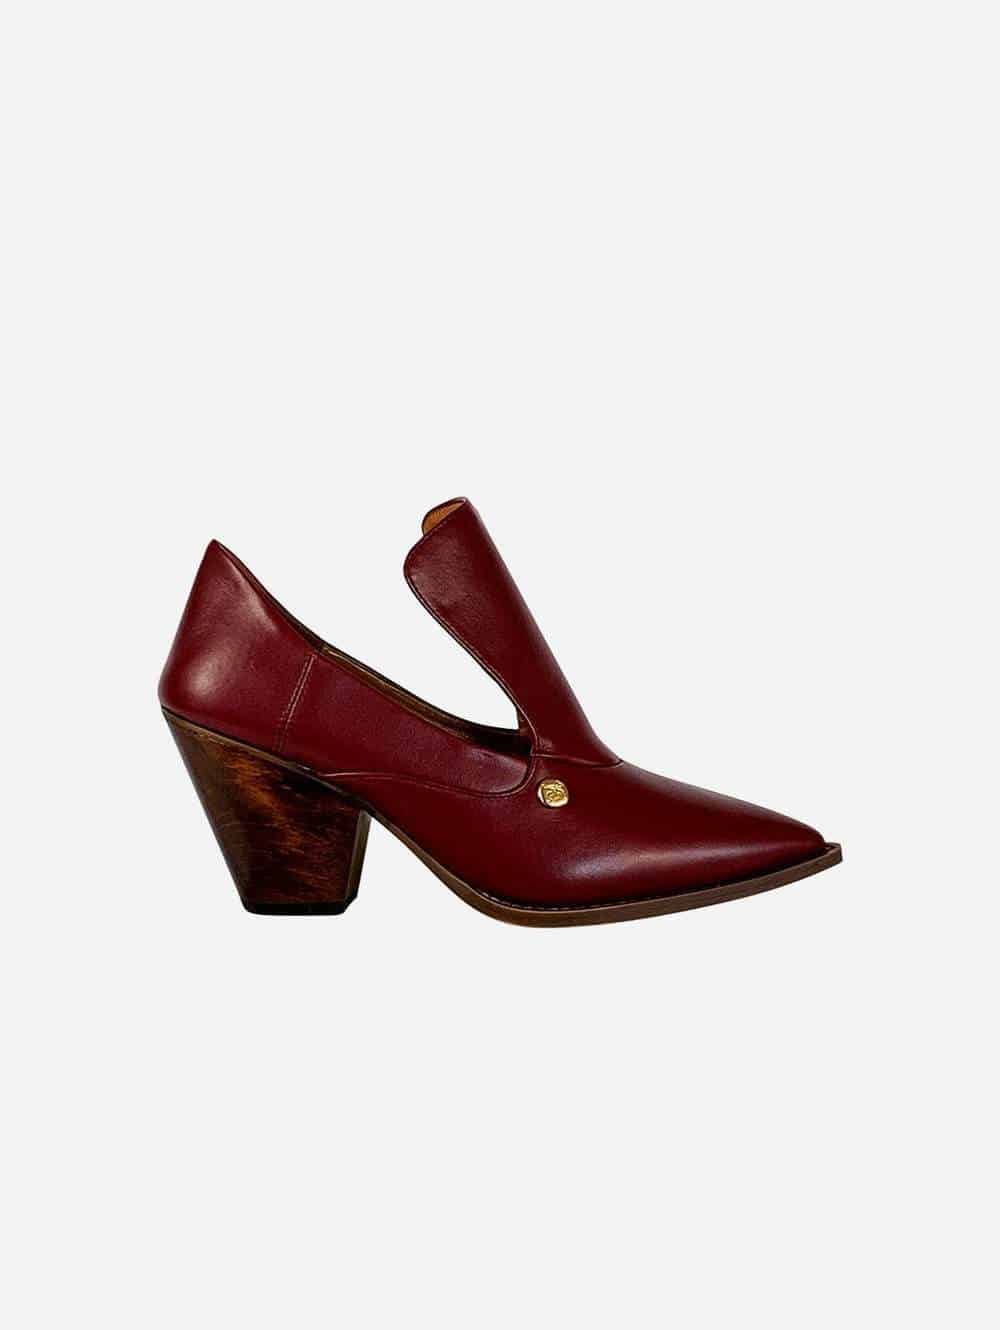 Burgundy vegan shoes heel with wooden heel